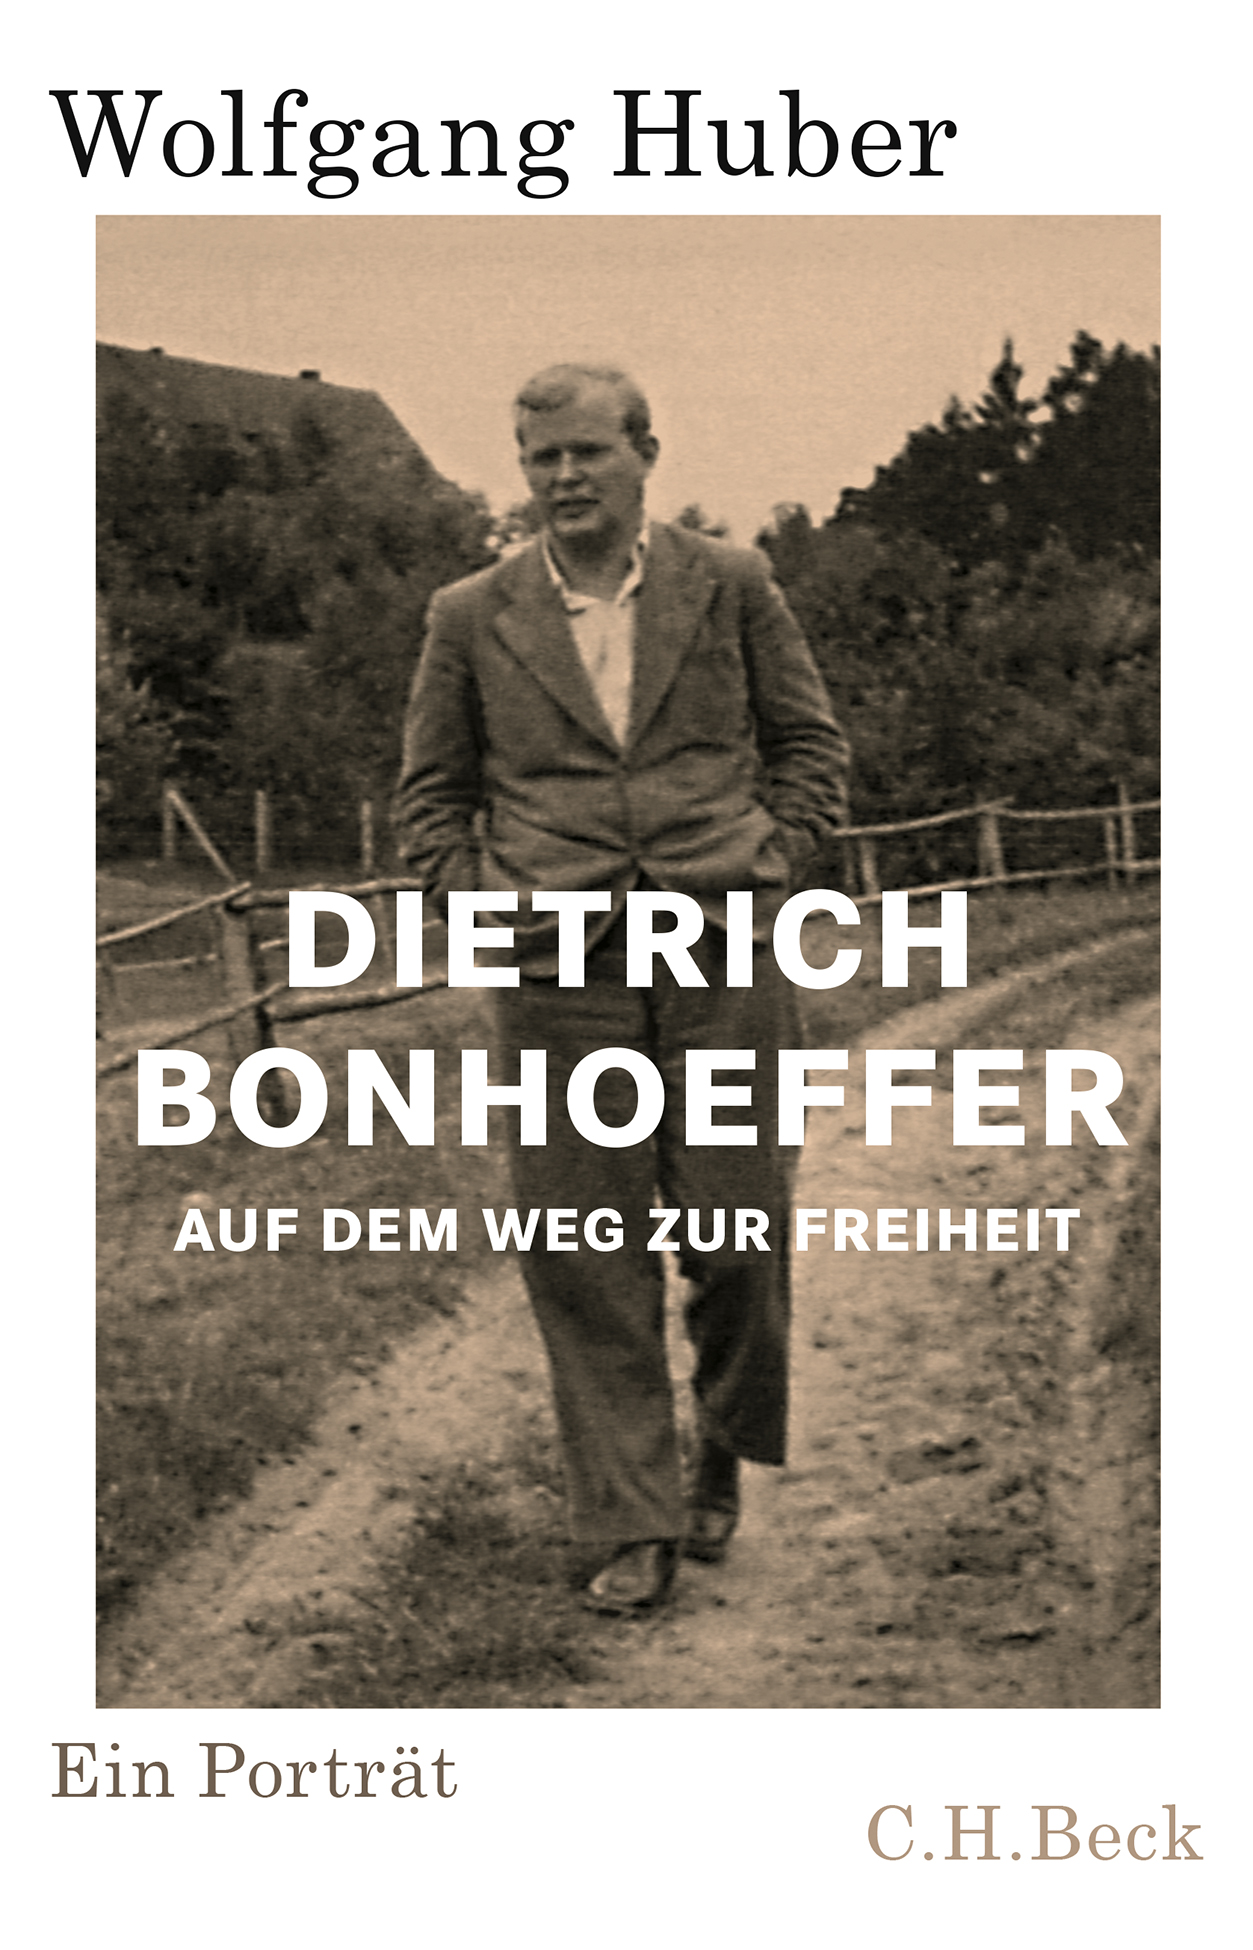 Wolfgang Huber. Dietrich Bonhoeffer. Auf dem Weg zur Freiheit. Ein Portrait